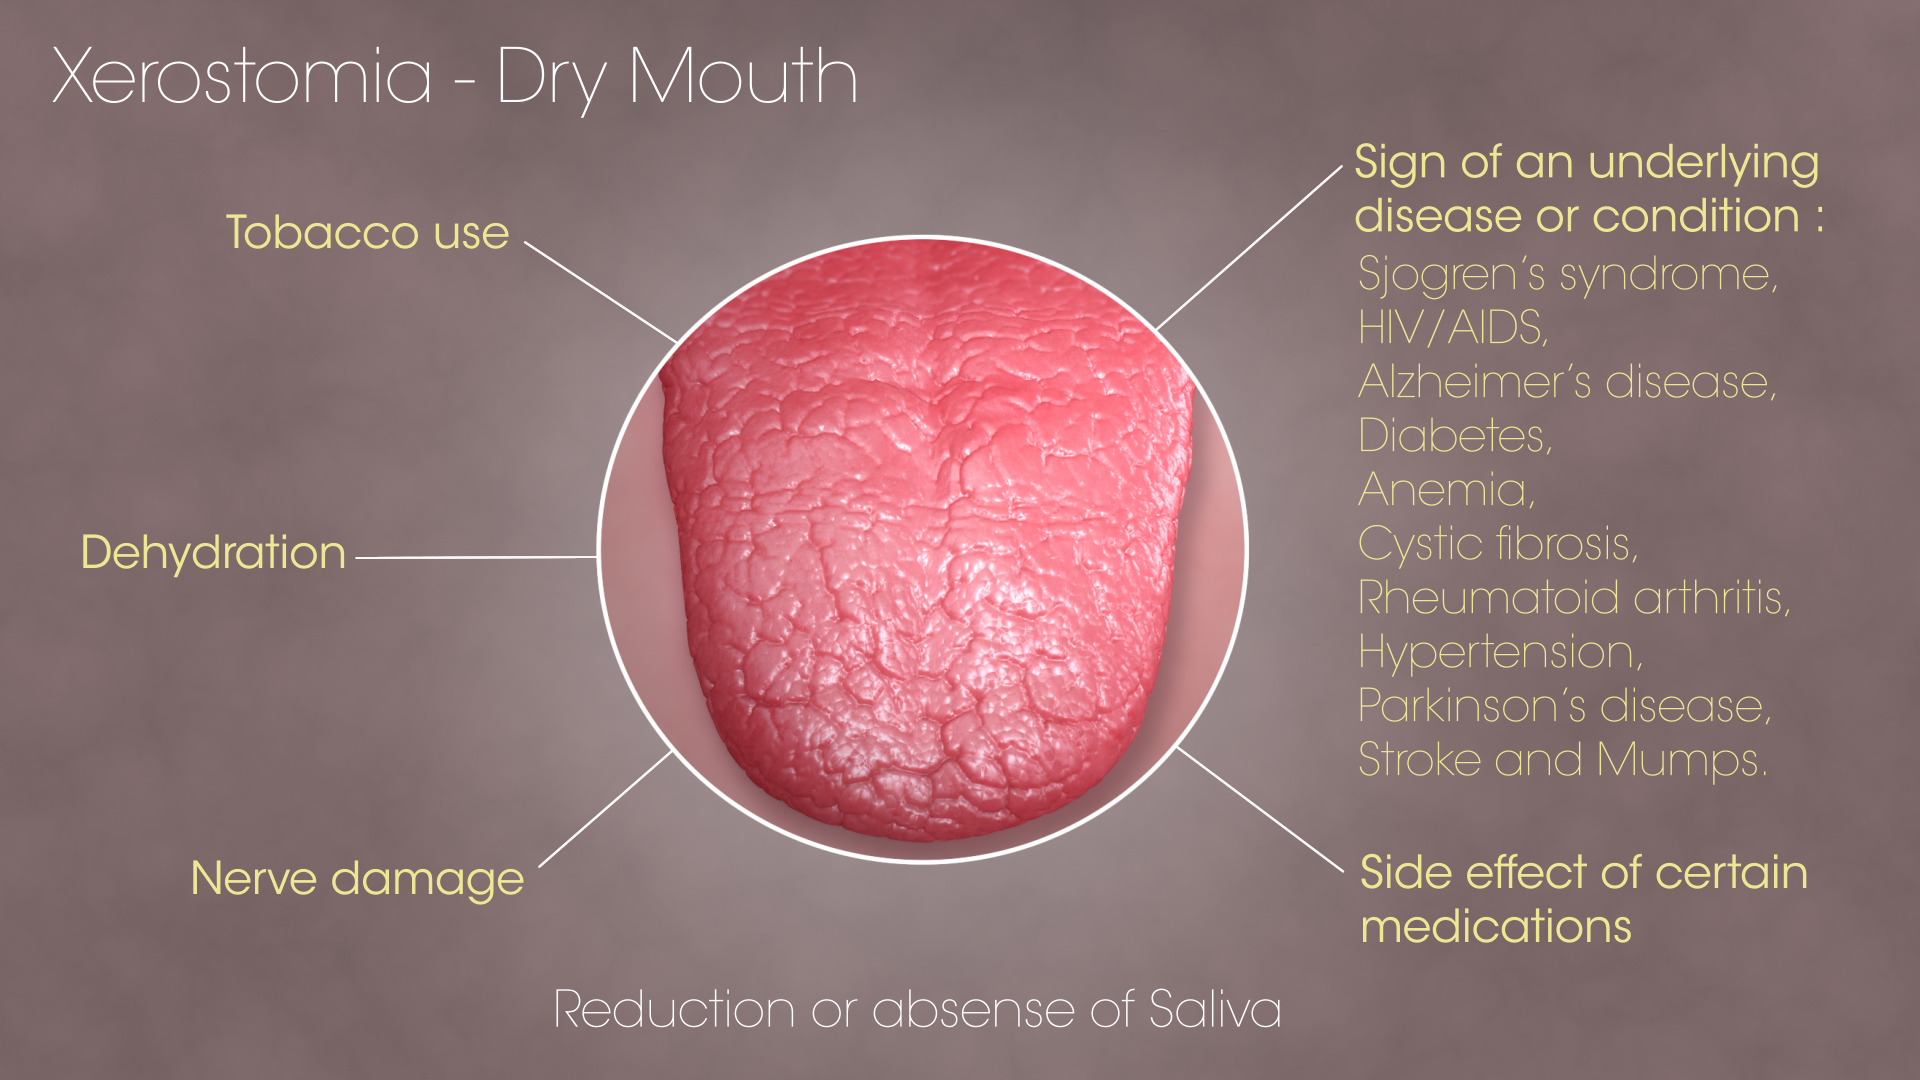 SAG Xerostomia Dry Mouth 160805 01 